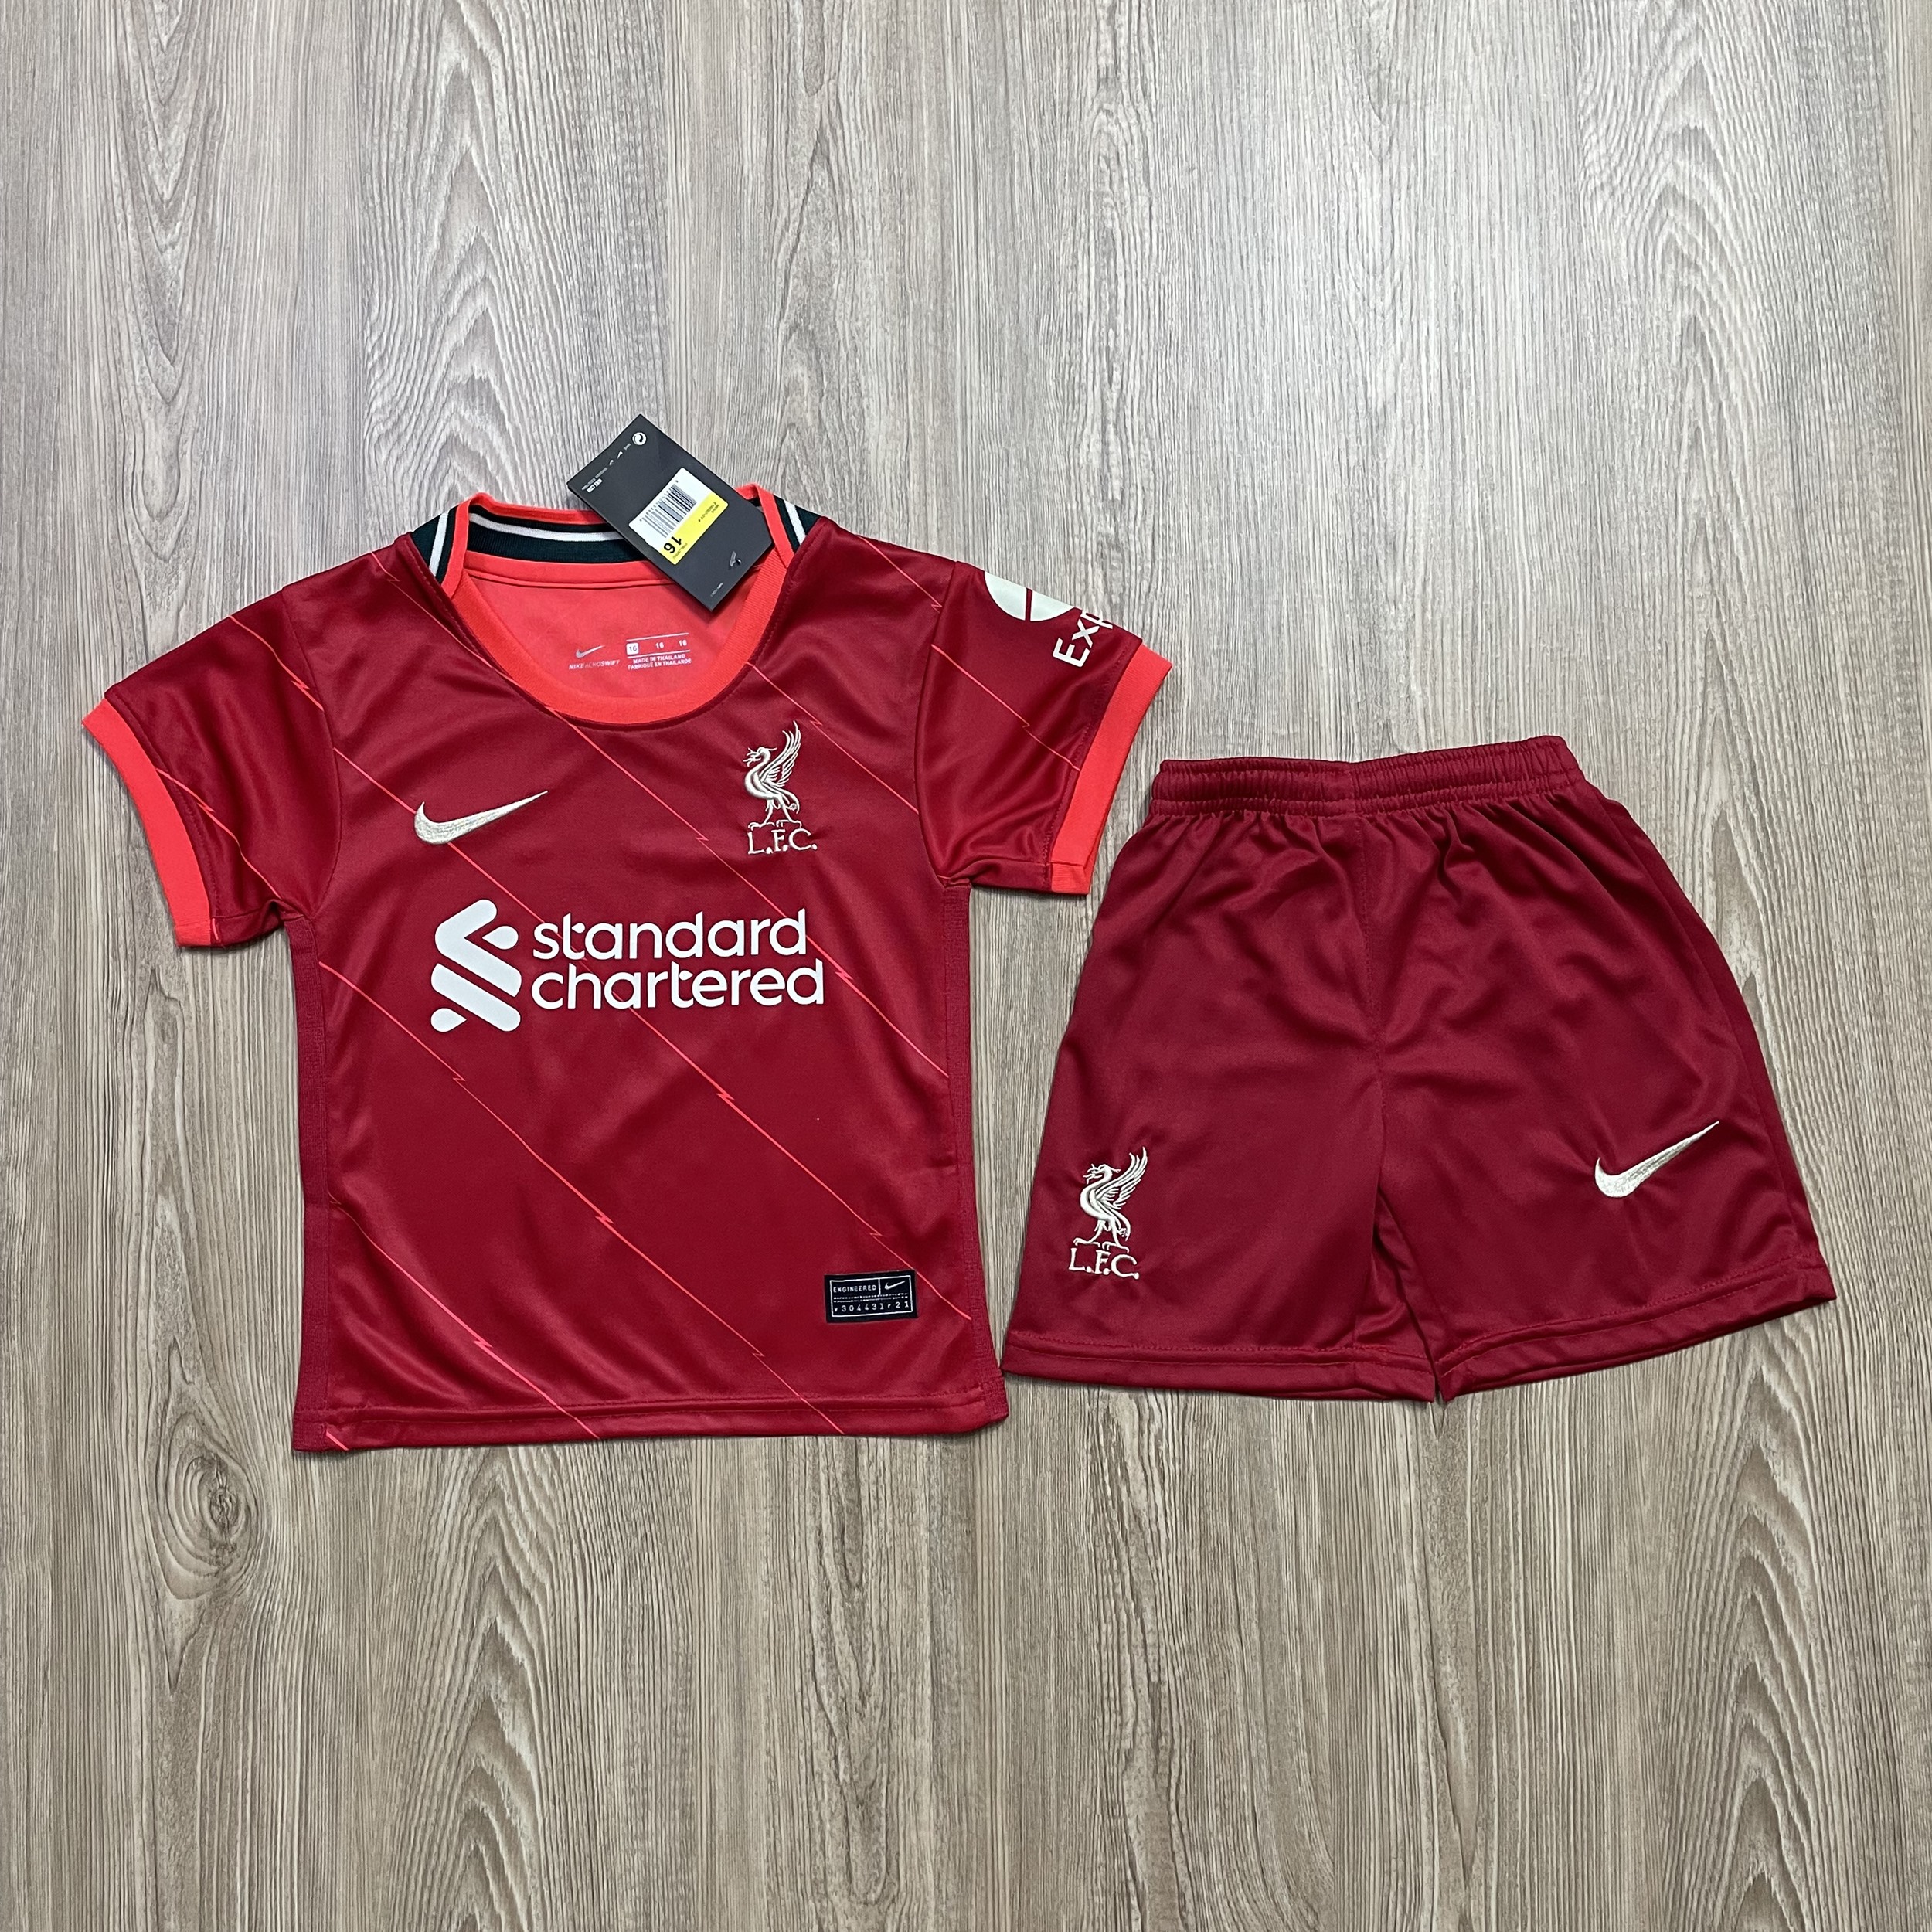 ชุดบอลเด็ก Liverpool ชุดกีฬาเด็กทีม เสื้อทีม ซื้อครั้งเดียวได้ทั้งชุด (เสื้อ+กางเกง) ตัวเดียวในราคาส่ง สินค้าเกรด-A